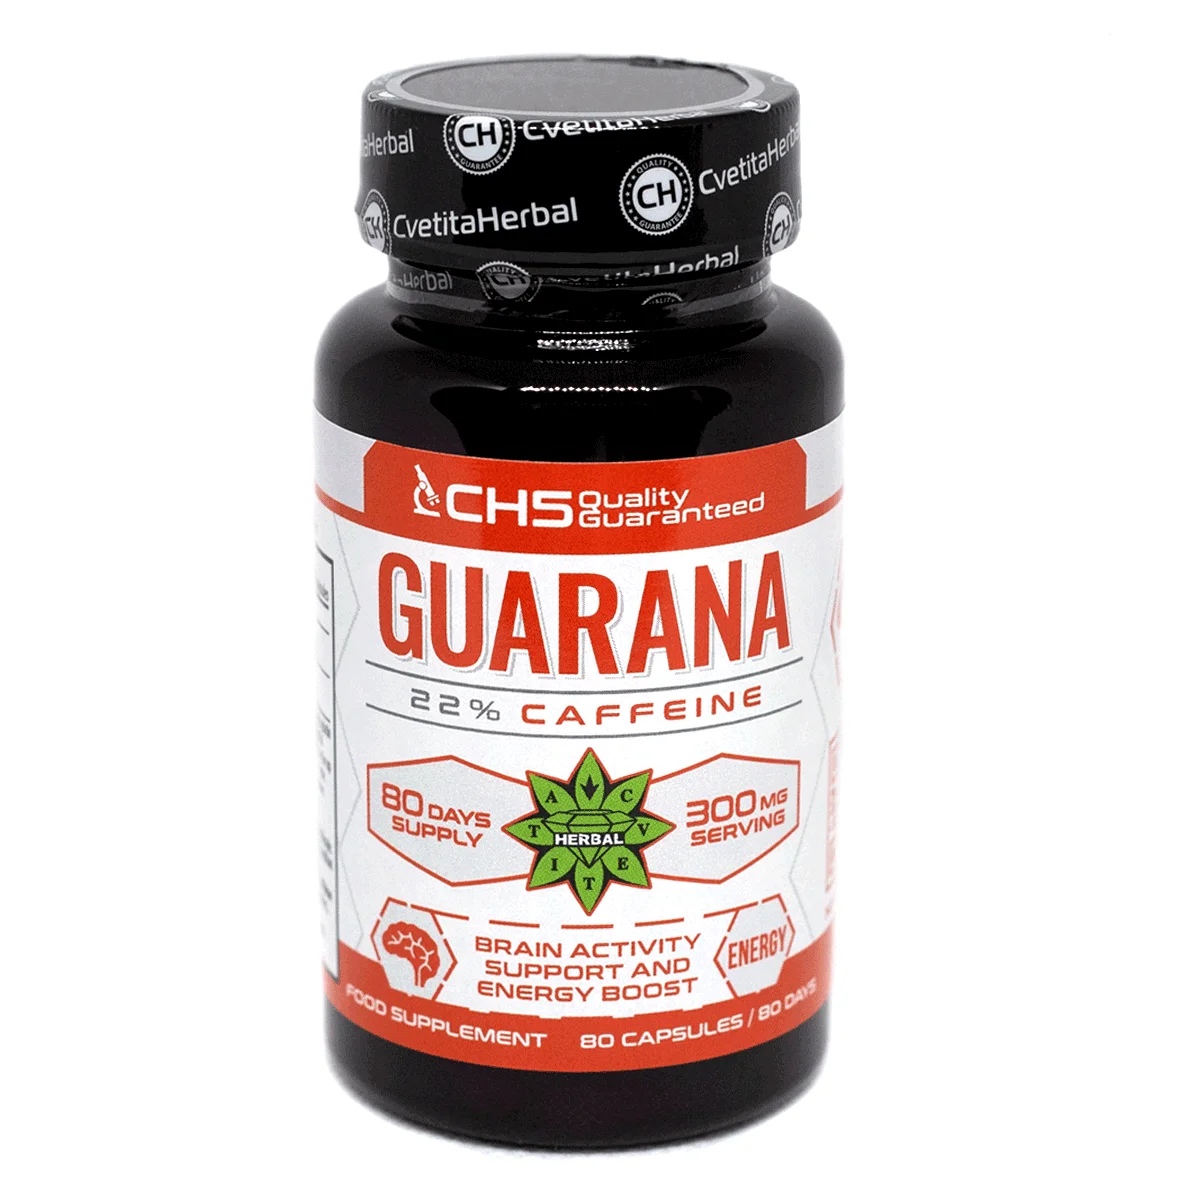 Cvetita Herbal Guarana - 80 Capsules x 300 mg